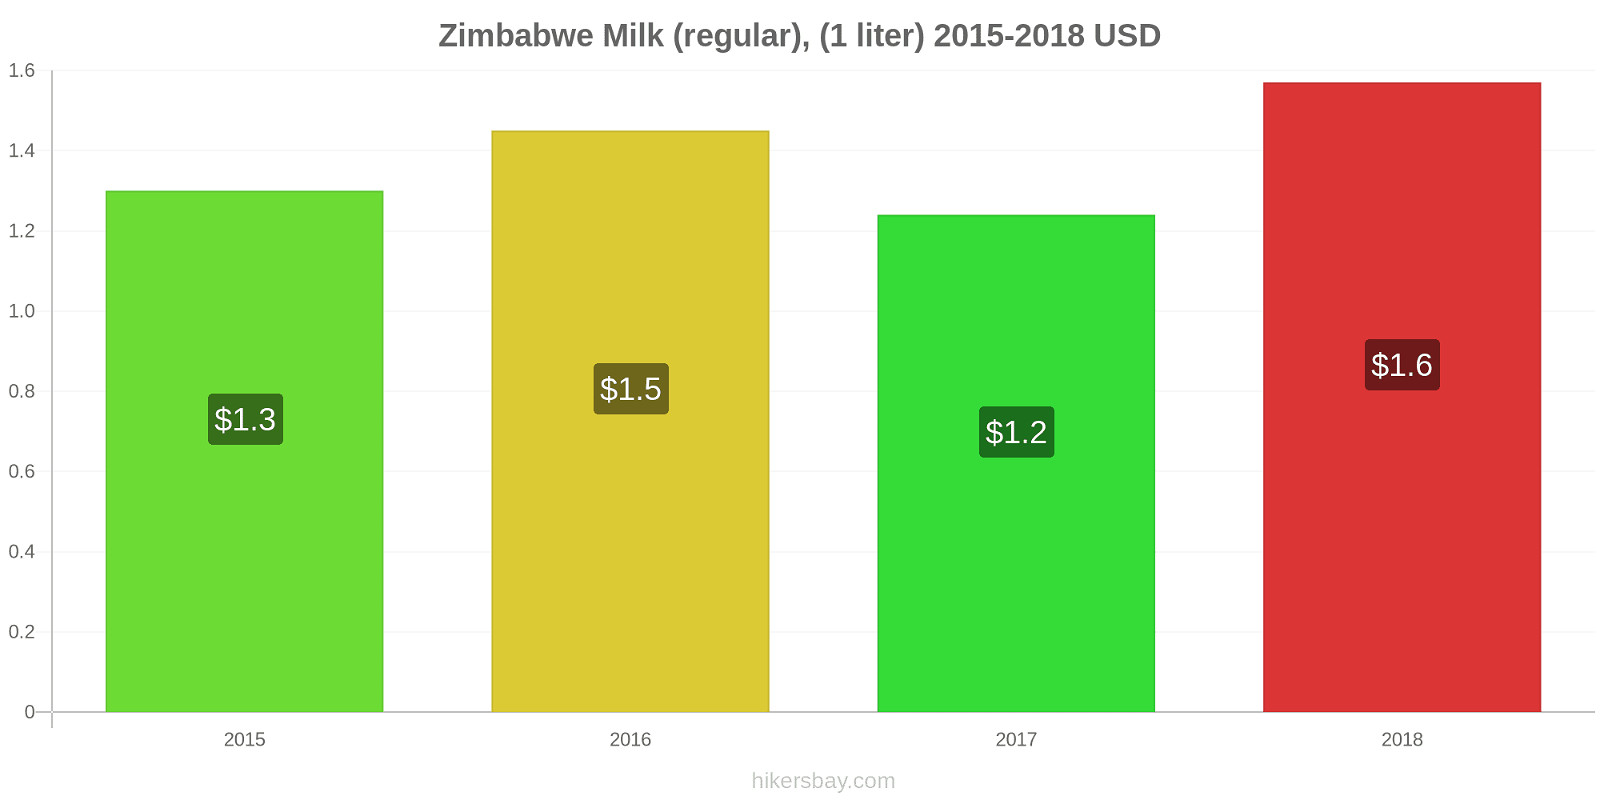 Zimbabwe price changes Milk (regular), (1 liter) hikersbay.com